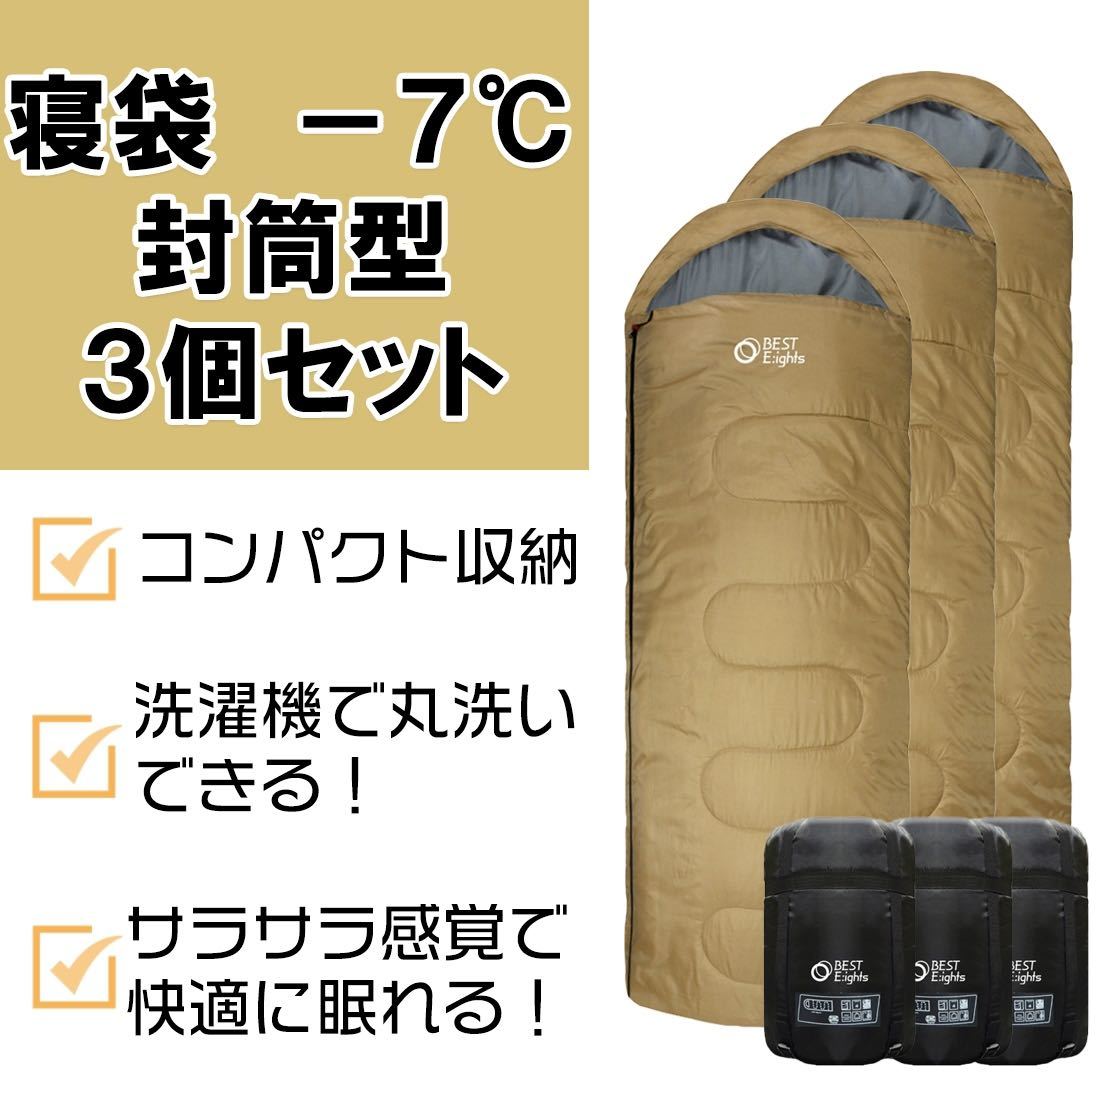 新品 Jungle World寝袋-10°C 210T 3個セット コヨーテ アウトドア 寝袋